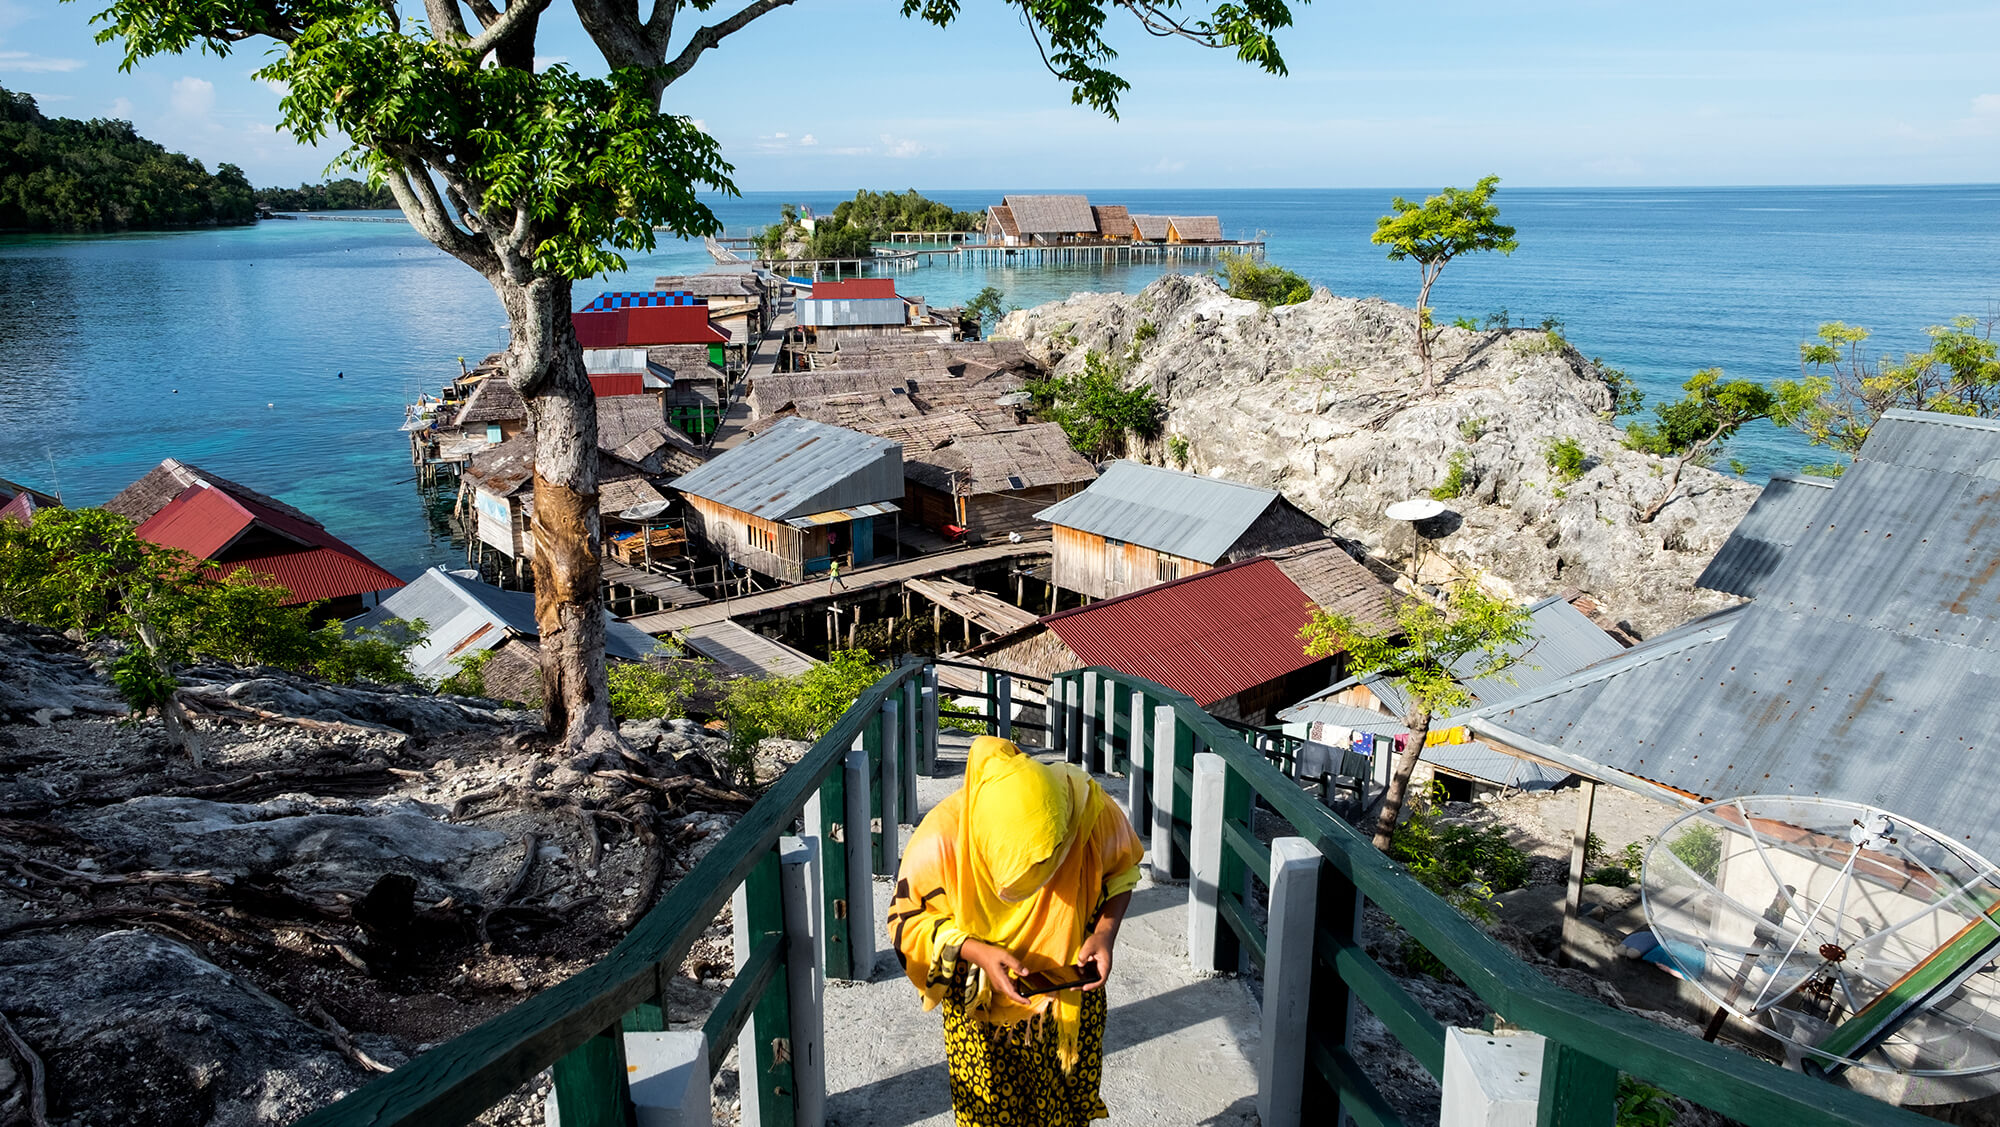 Panorámica de aldea bajau en las islas Togean de Sulawesi